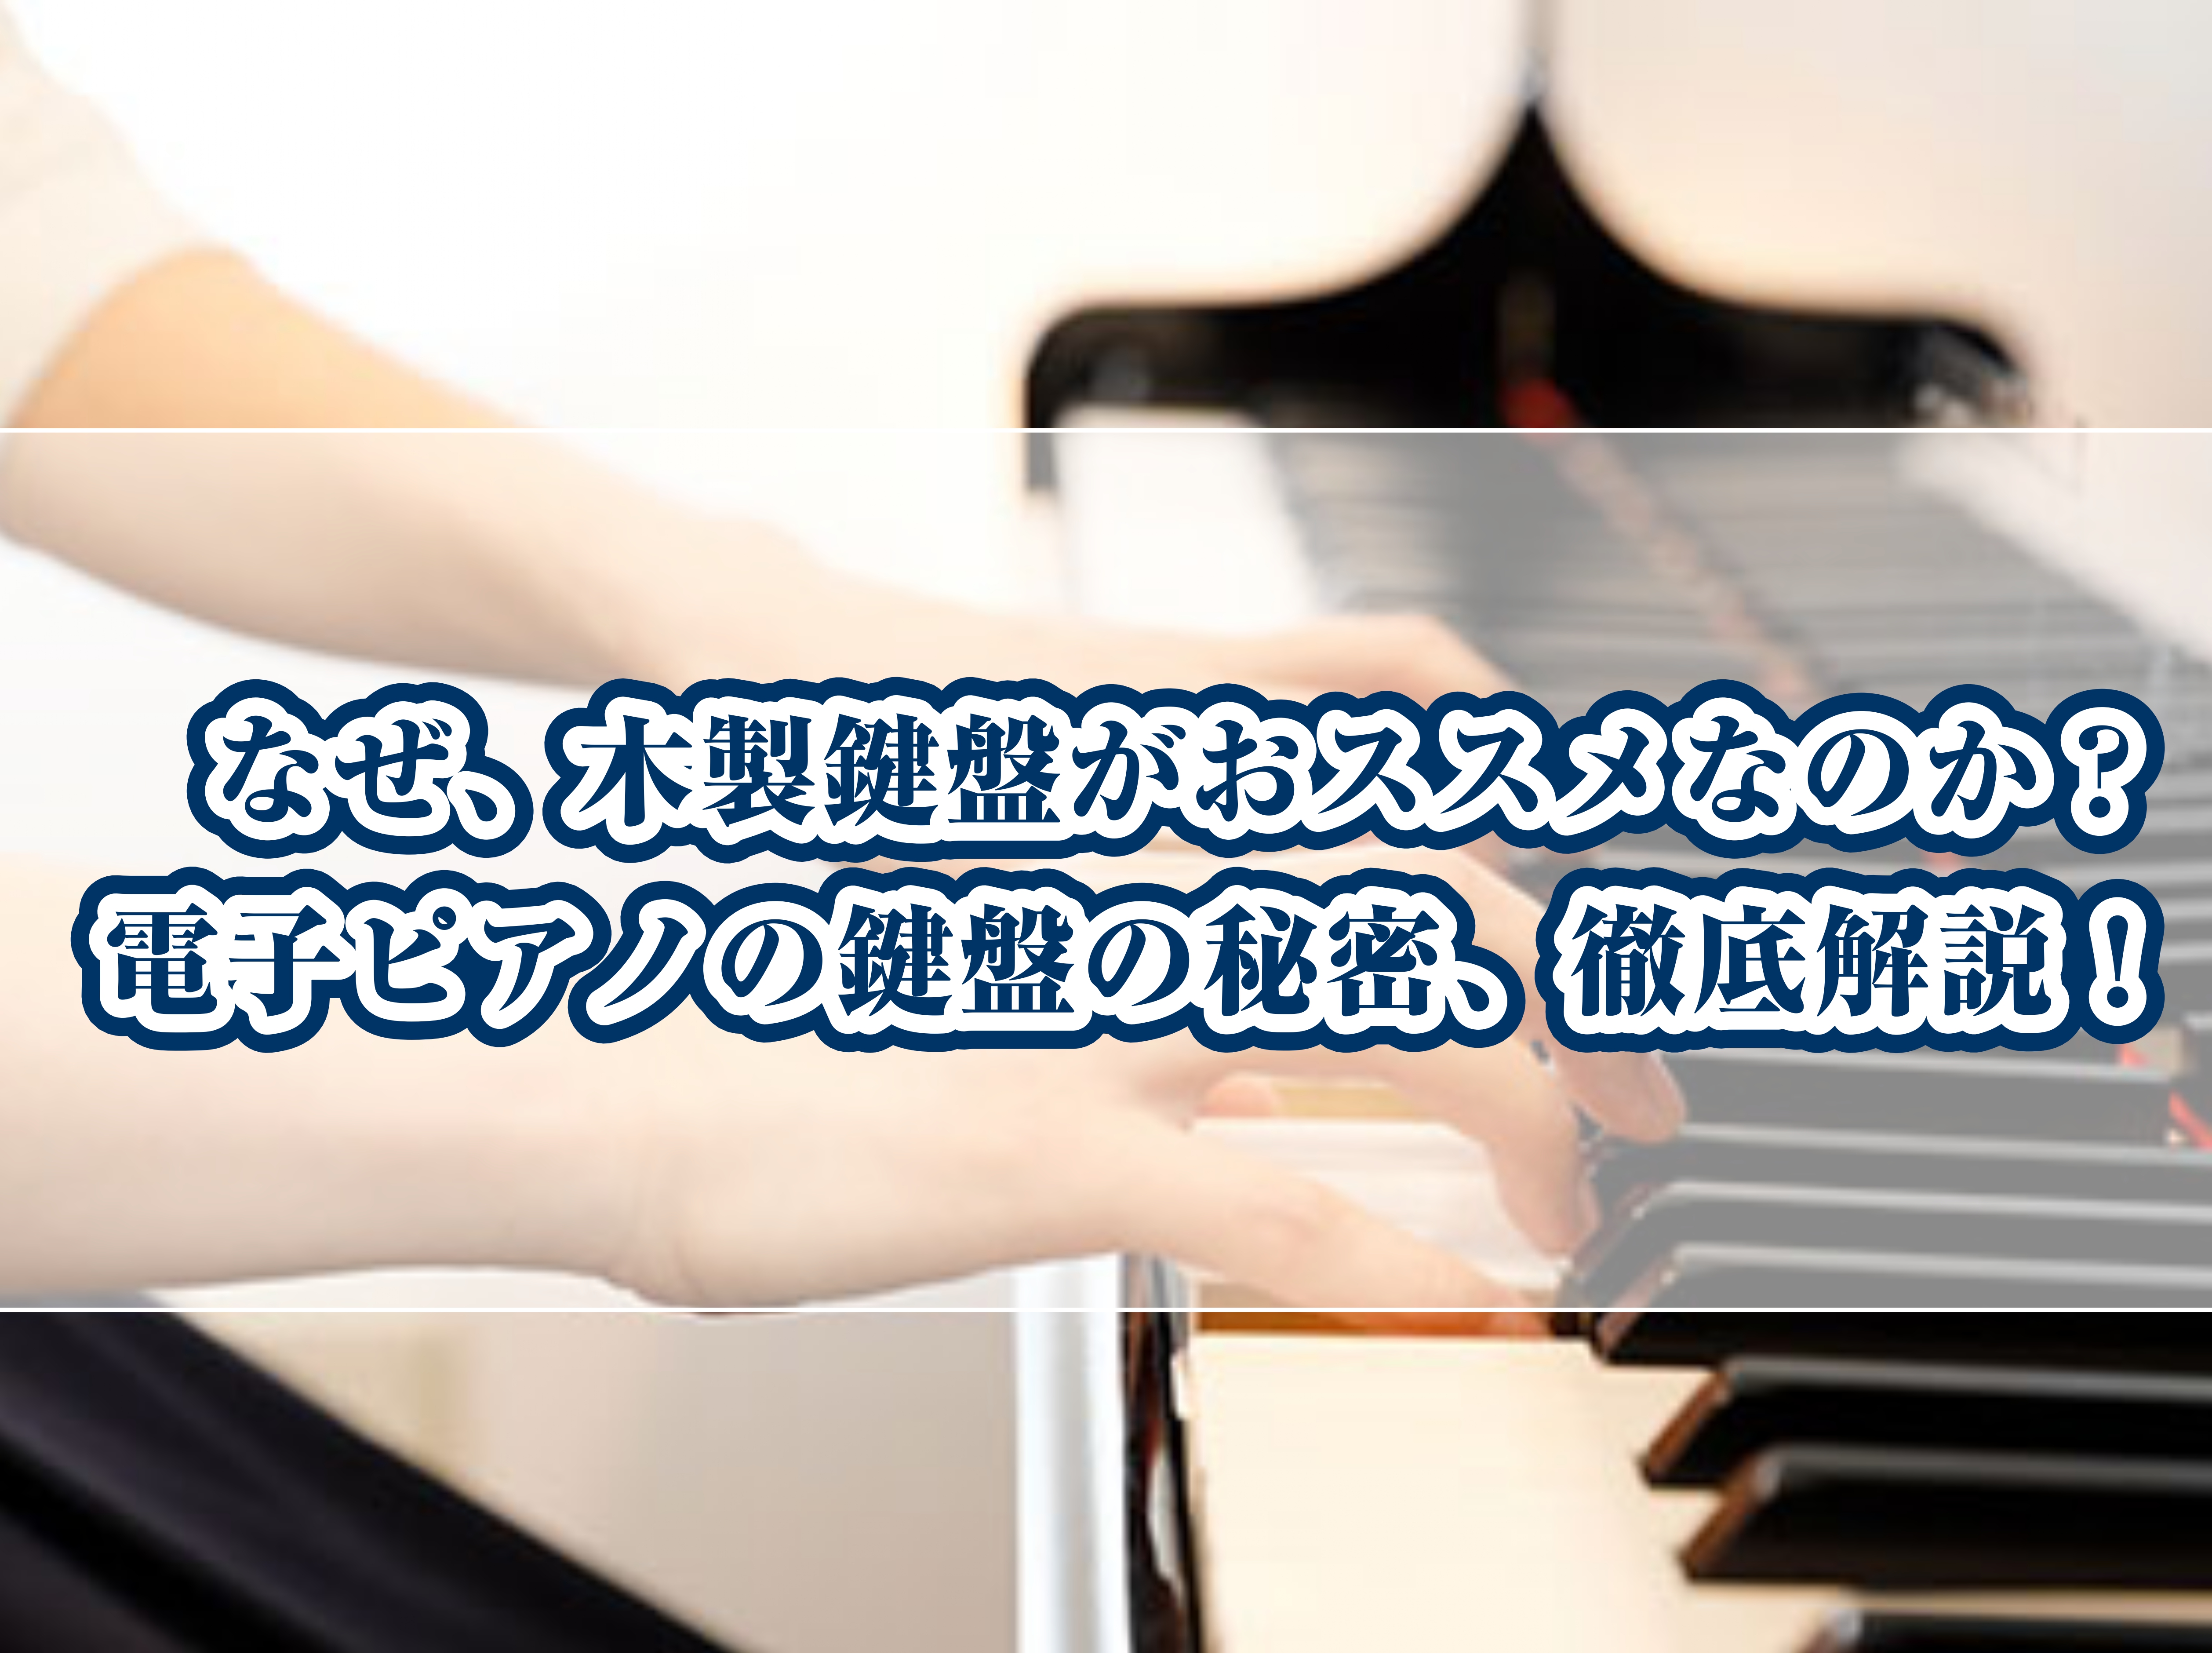 皆さん、こんにちは！　島村楽器沖縄浦添パルコシティ店　ピアノアドバイザーのオグラです。この春から、レッスンを始めた皆さん。そろそろレッスンにも慣れてきて、電子ピアノを準備しようかな、と考え出したところで、ピアノの先生から、『電子ピアノなら木製鍵盤がおススメですよ！』と言われたことはありませんか？この […]